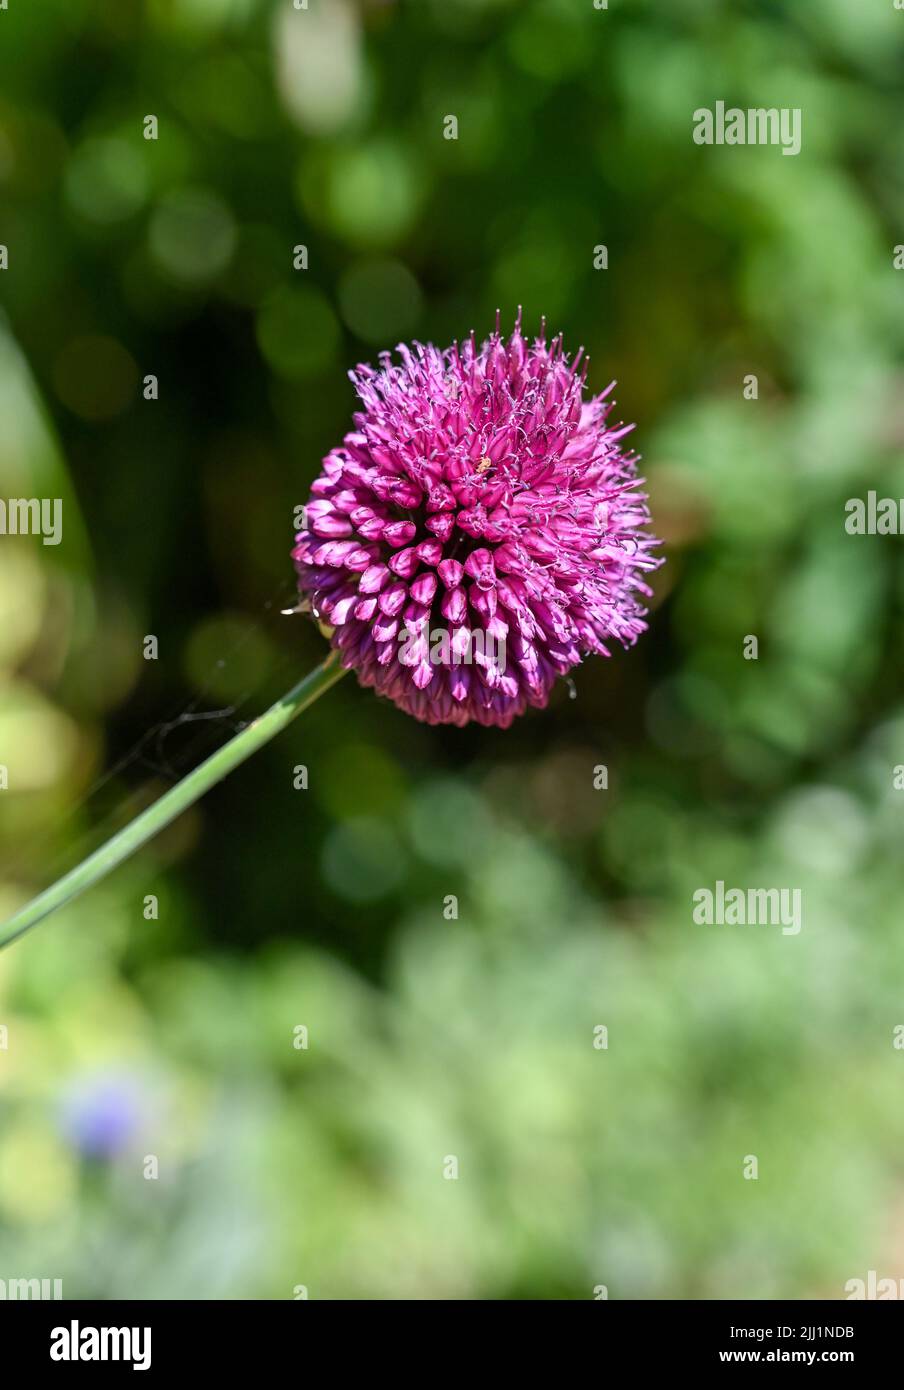 Pequeña planta púrpura Allium floreciendo en verano Reino Unido - Allium sphaerocephalon También conocido como el palillo de tambor allium o puerro de cabeza redonda, es una flor de verano Foto de stock